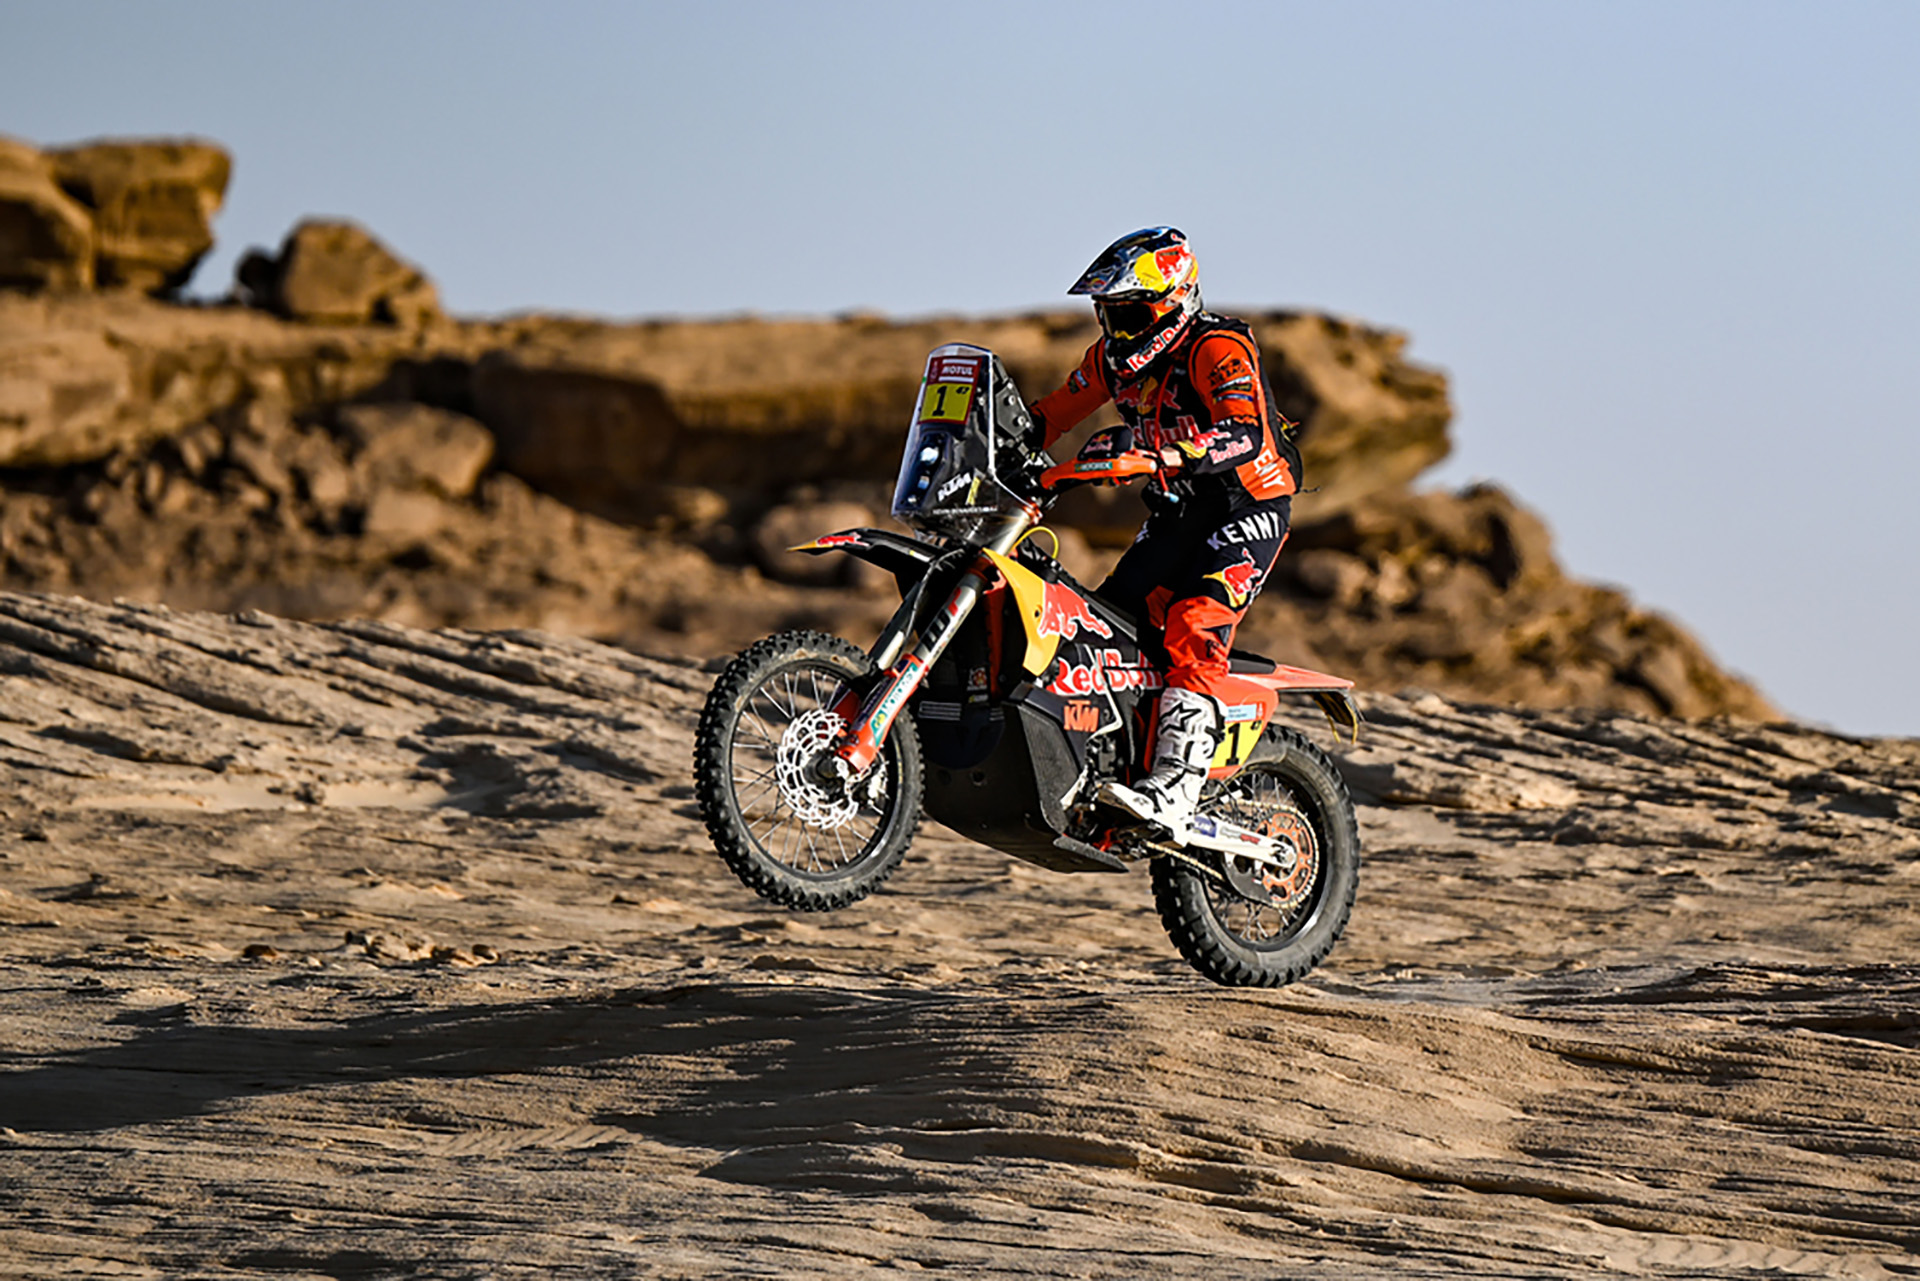 Kevin Benavides, vencedor en 2021, irá por su revancha en Motos
(crédito: Prensa Rally Dakar)